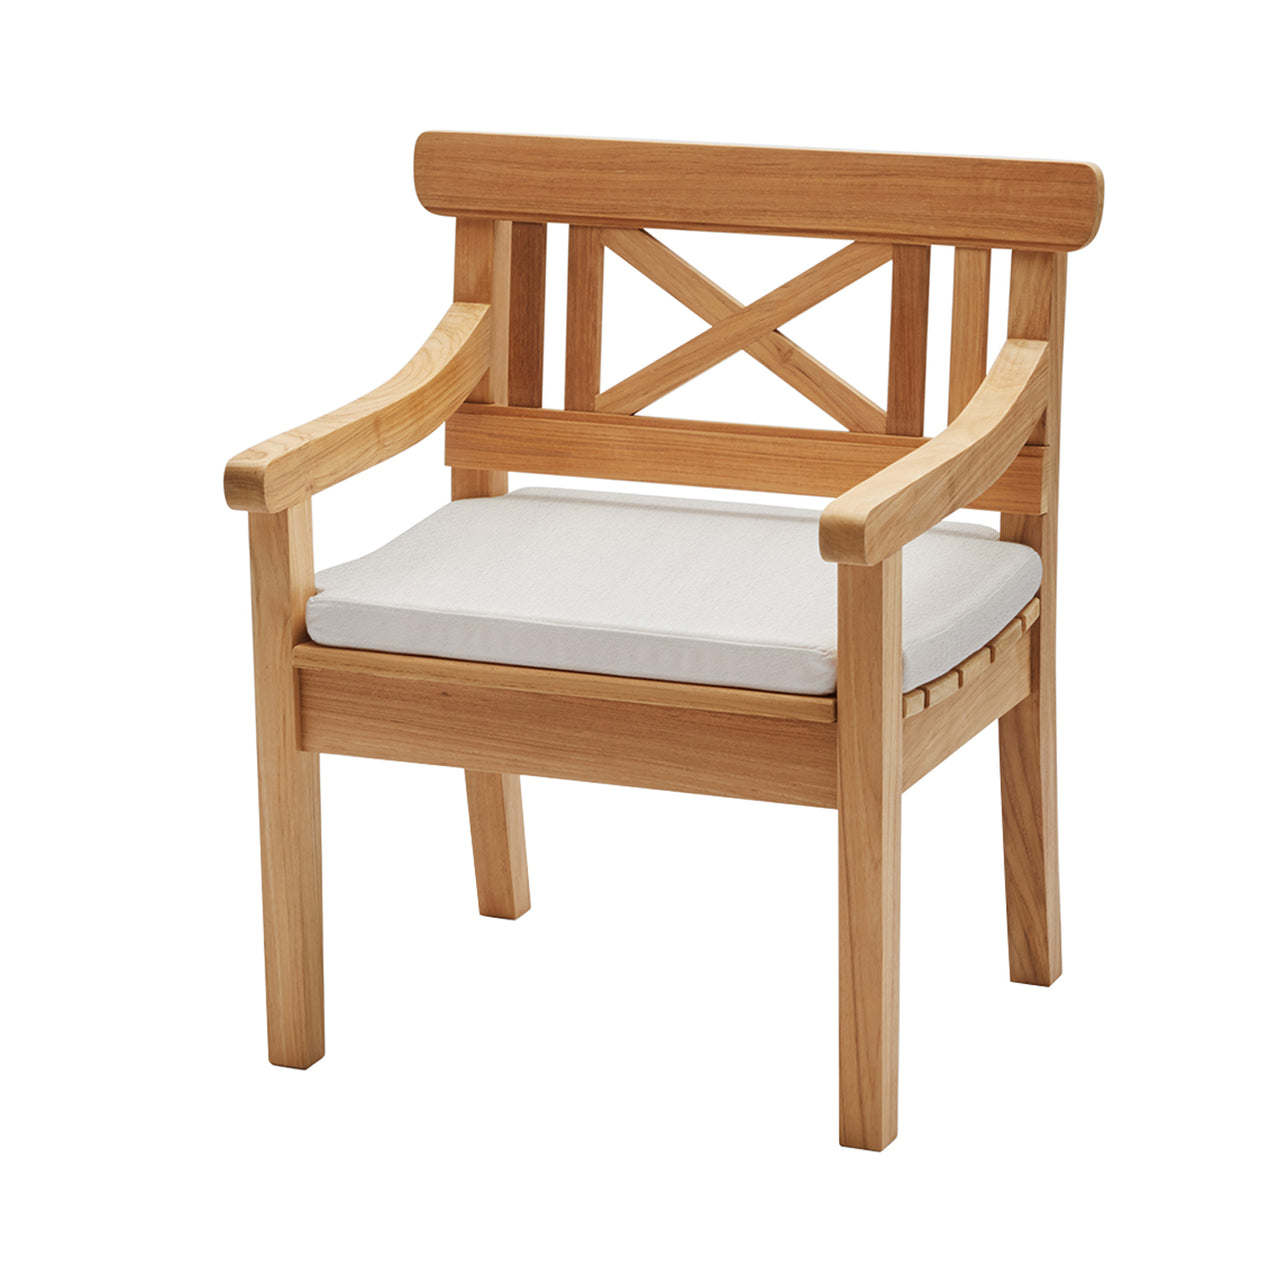 Drachmann Chair: Papyrus Cushion